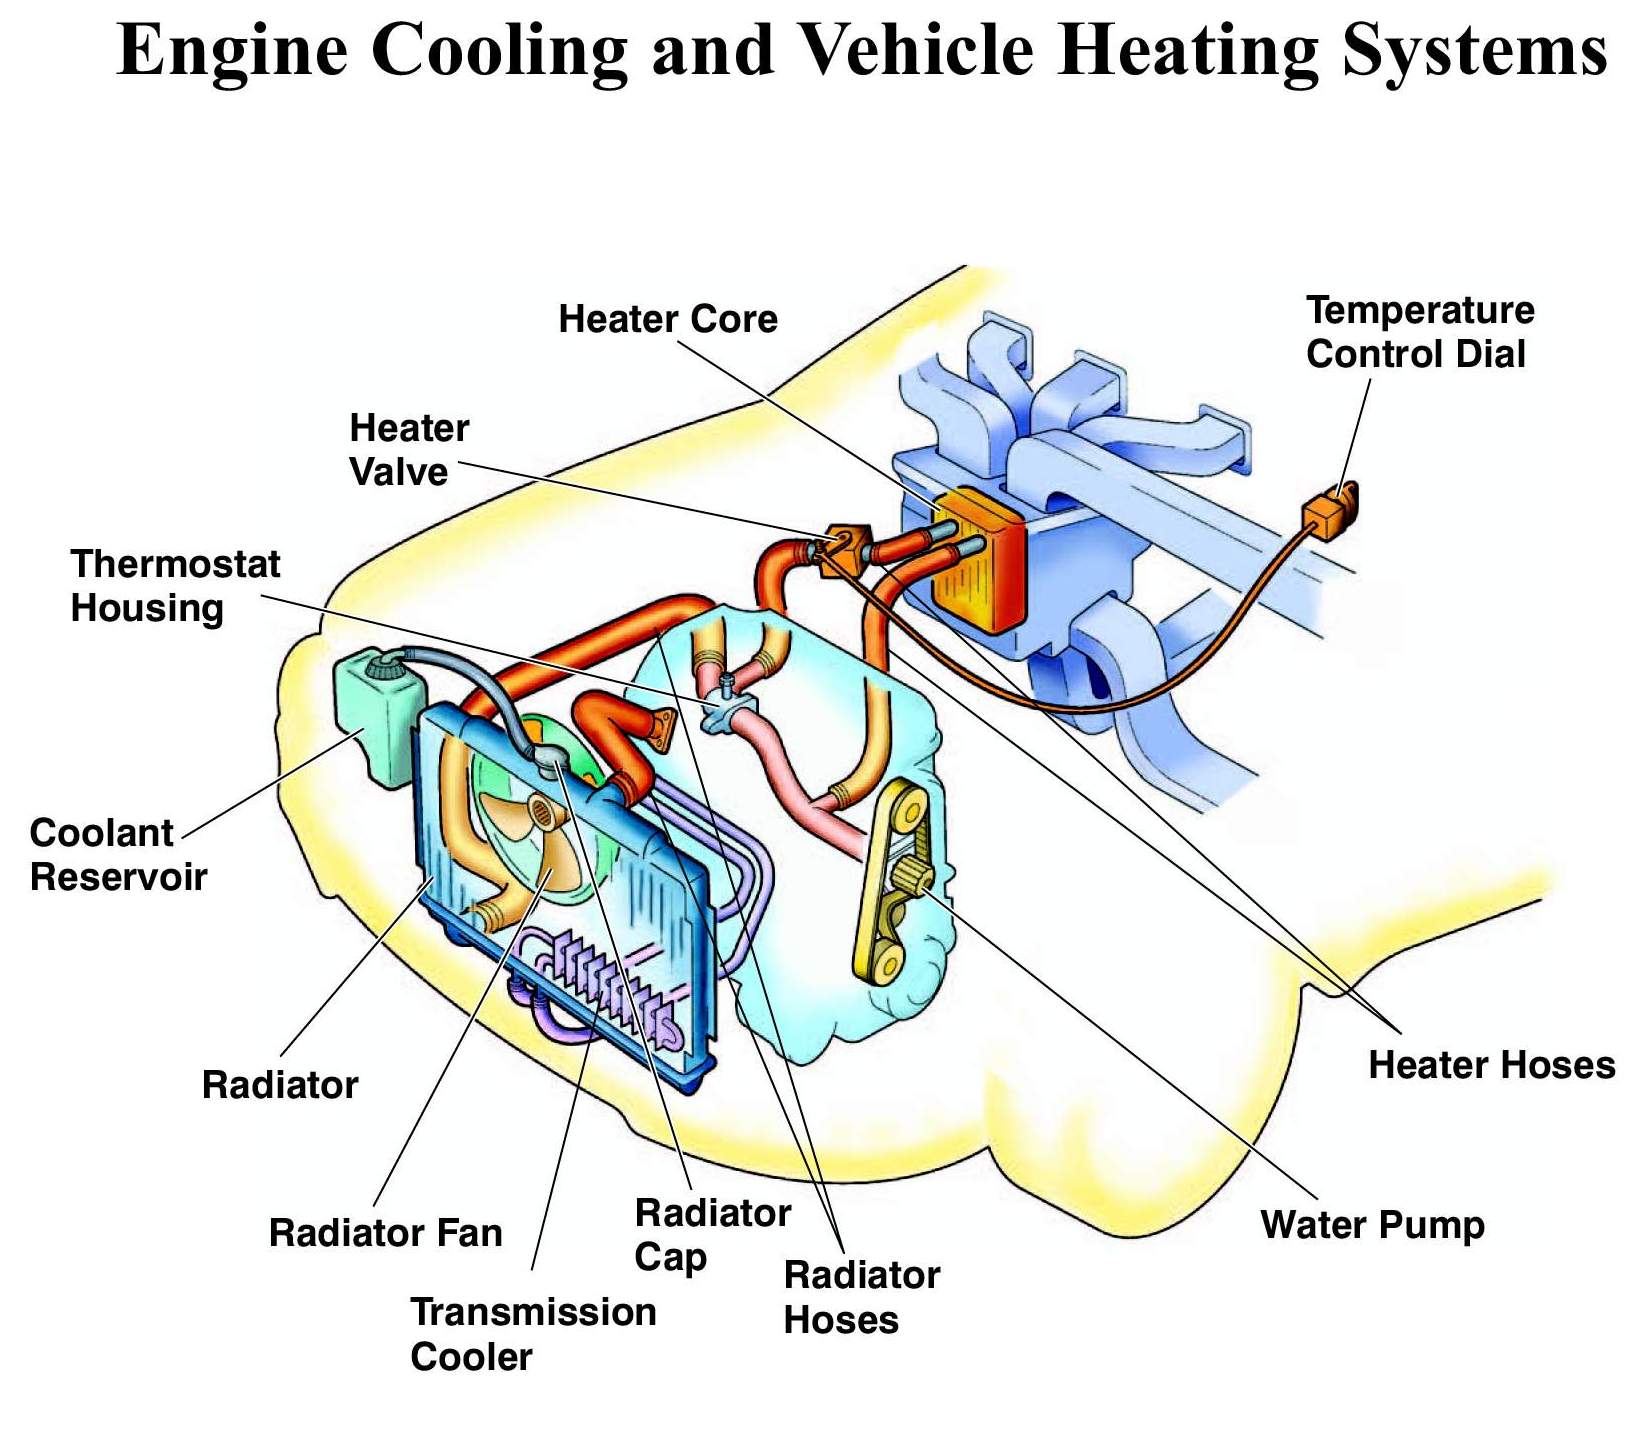 Завоздушена система охлаждения что делать: Как развоздушить систему охлаждения автомобиля